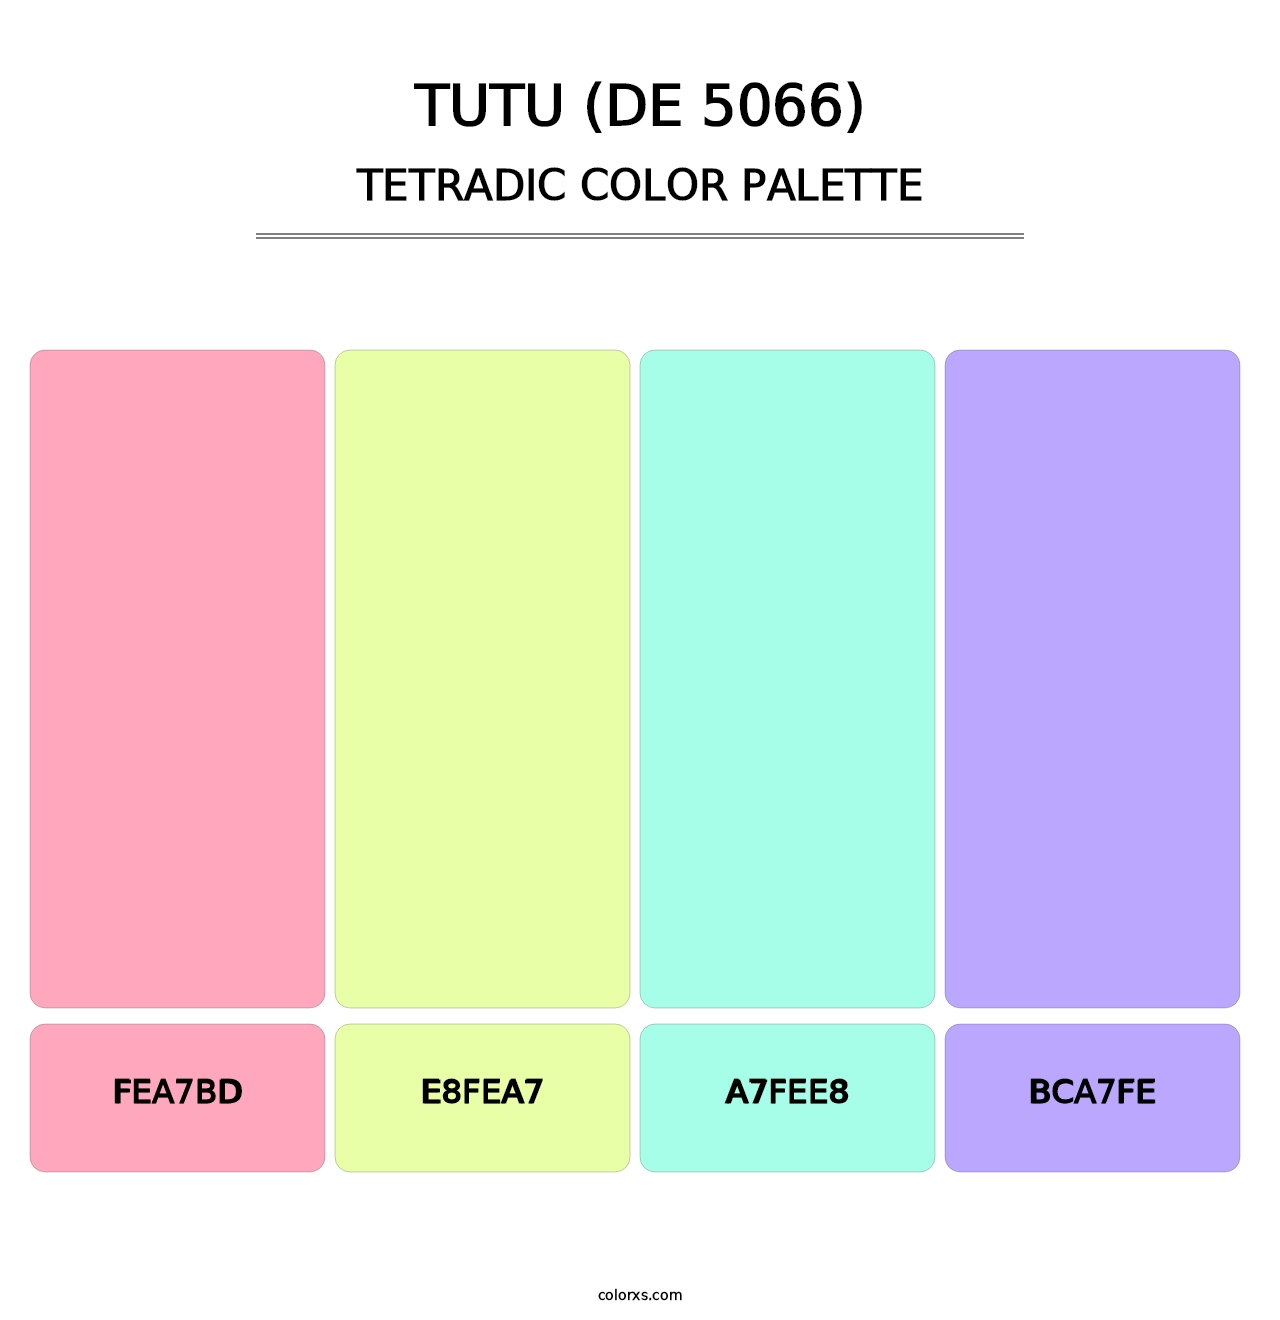 Tutu (DE 5066) - Tetradic Color Palette